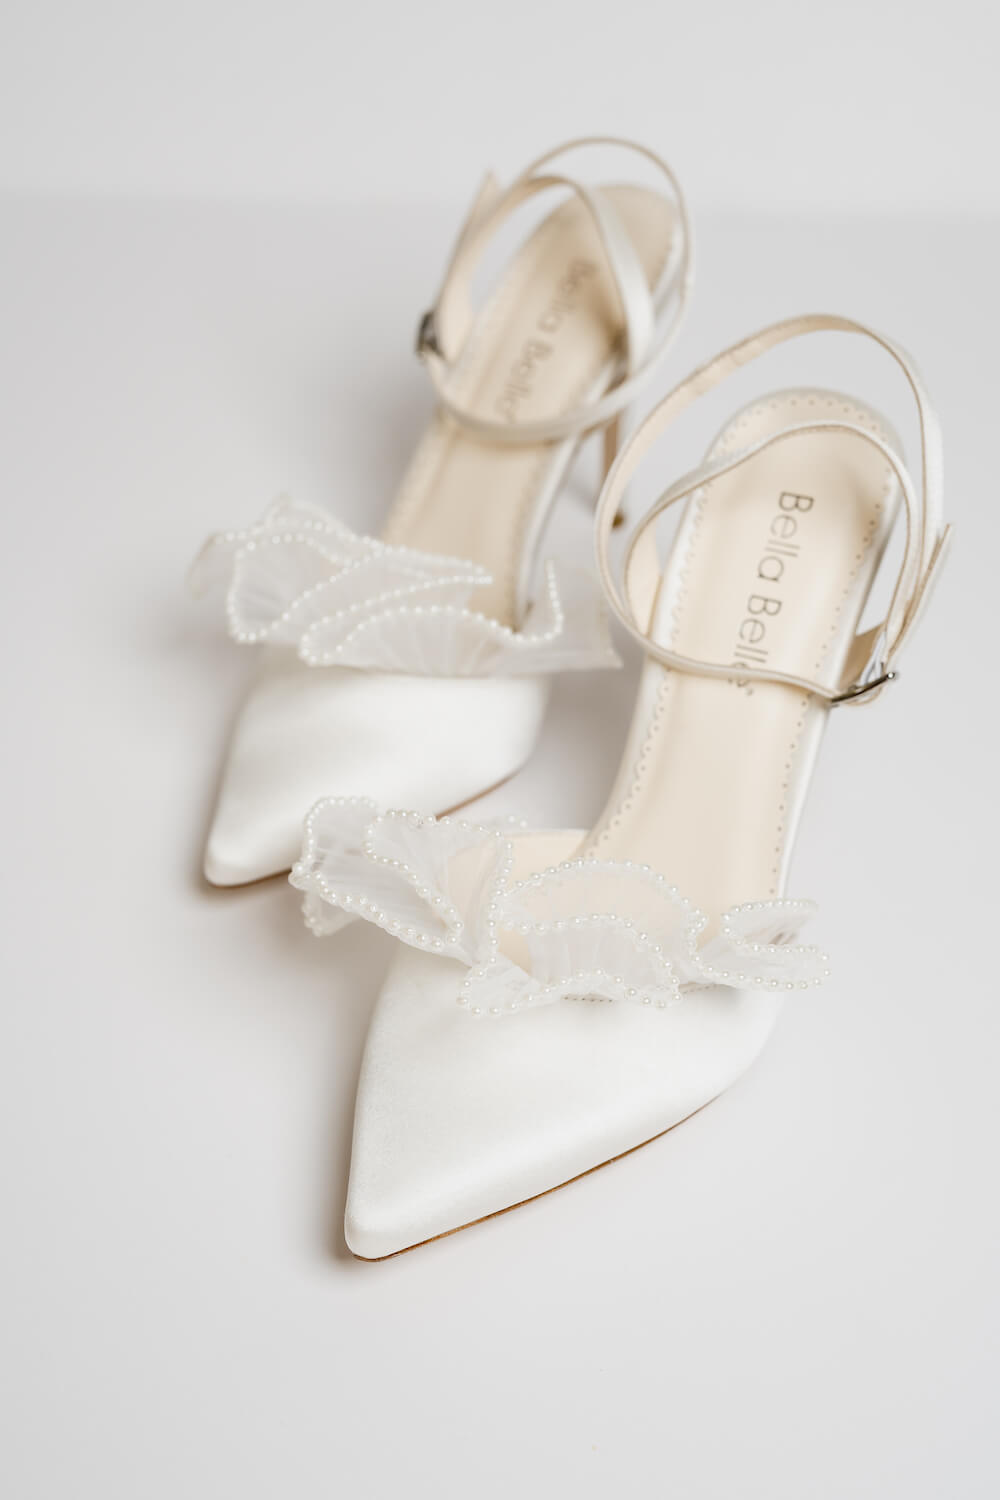 The 20 Best Low Heel Wedding Shoes of 2023